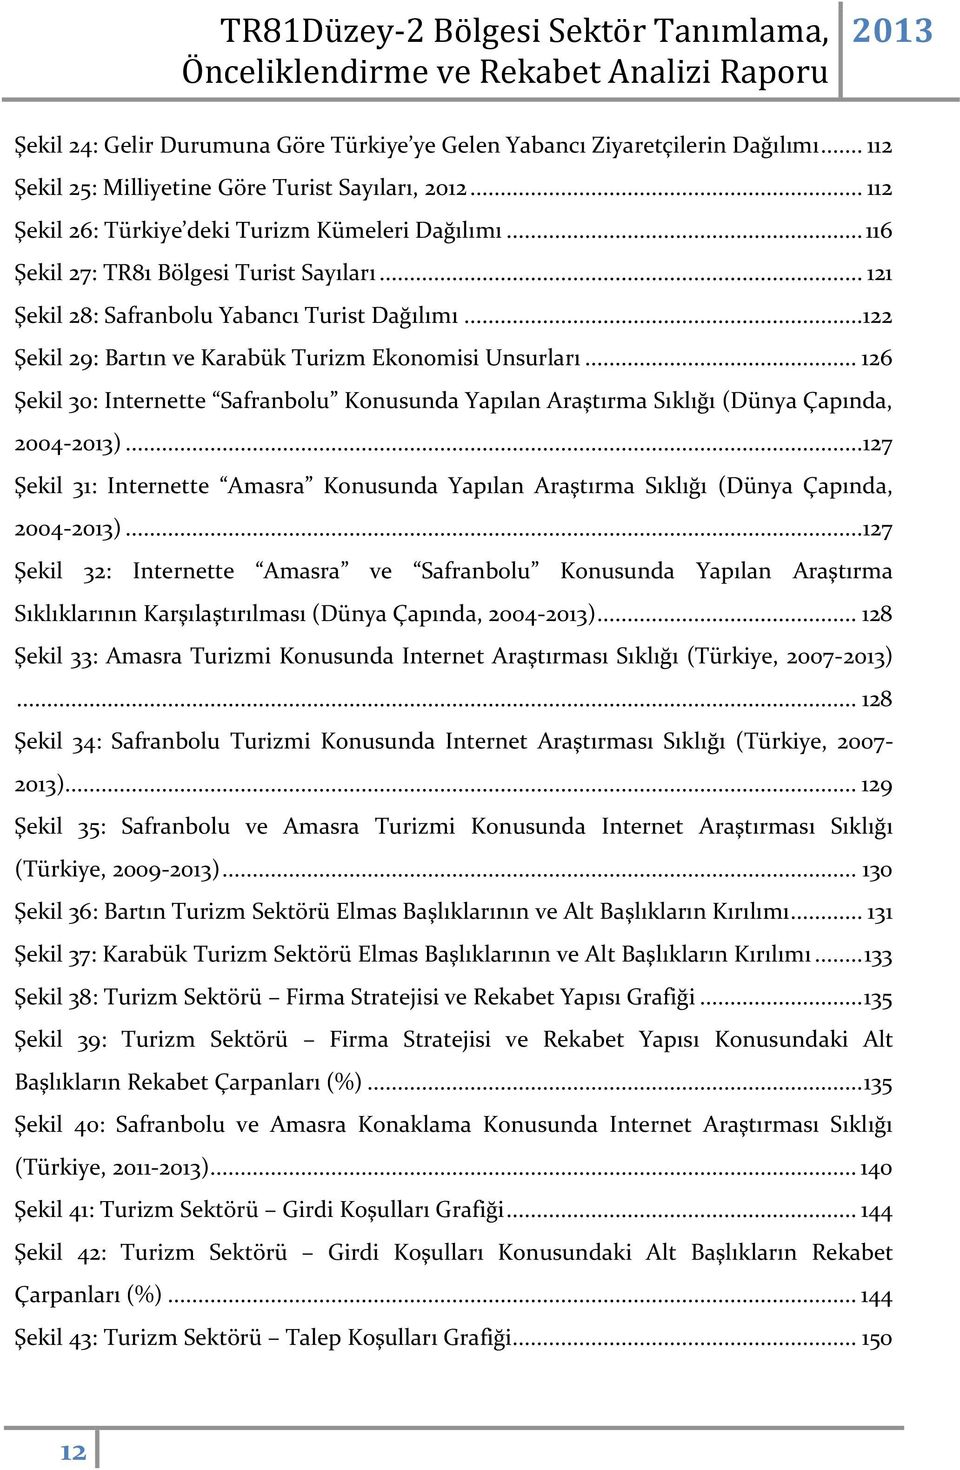 .. 126 Şekil 30: Internette Safranbolu Konusunda Yapılan Araştırma Sıklığı (Dünya Çapında, 2004-)...127 Şekil 31: Internette Amasra Konusunda Yapılan Araştırma Sıklığı (Dünya Çapında, 2004-).